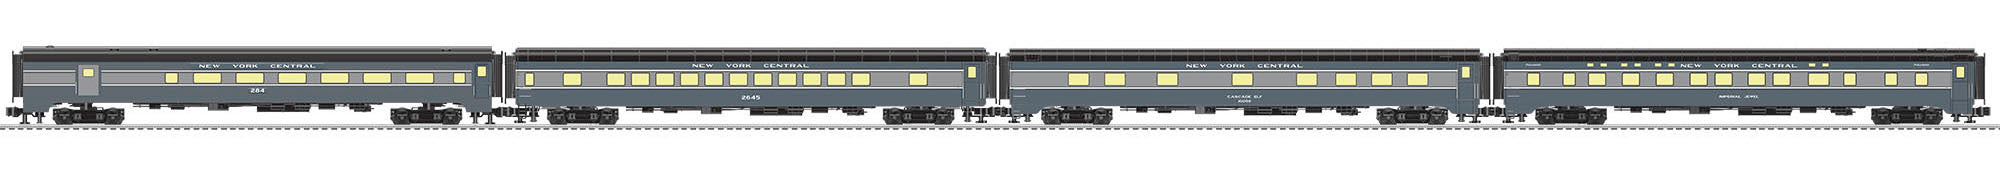 Lionel 2127310 - Southwestern Limited 21" Passenger Car Set "New York Central" (4-Car)